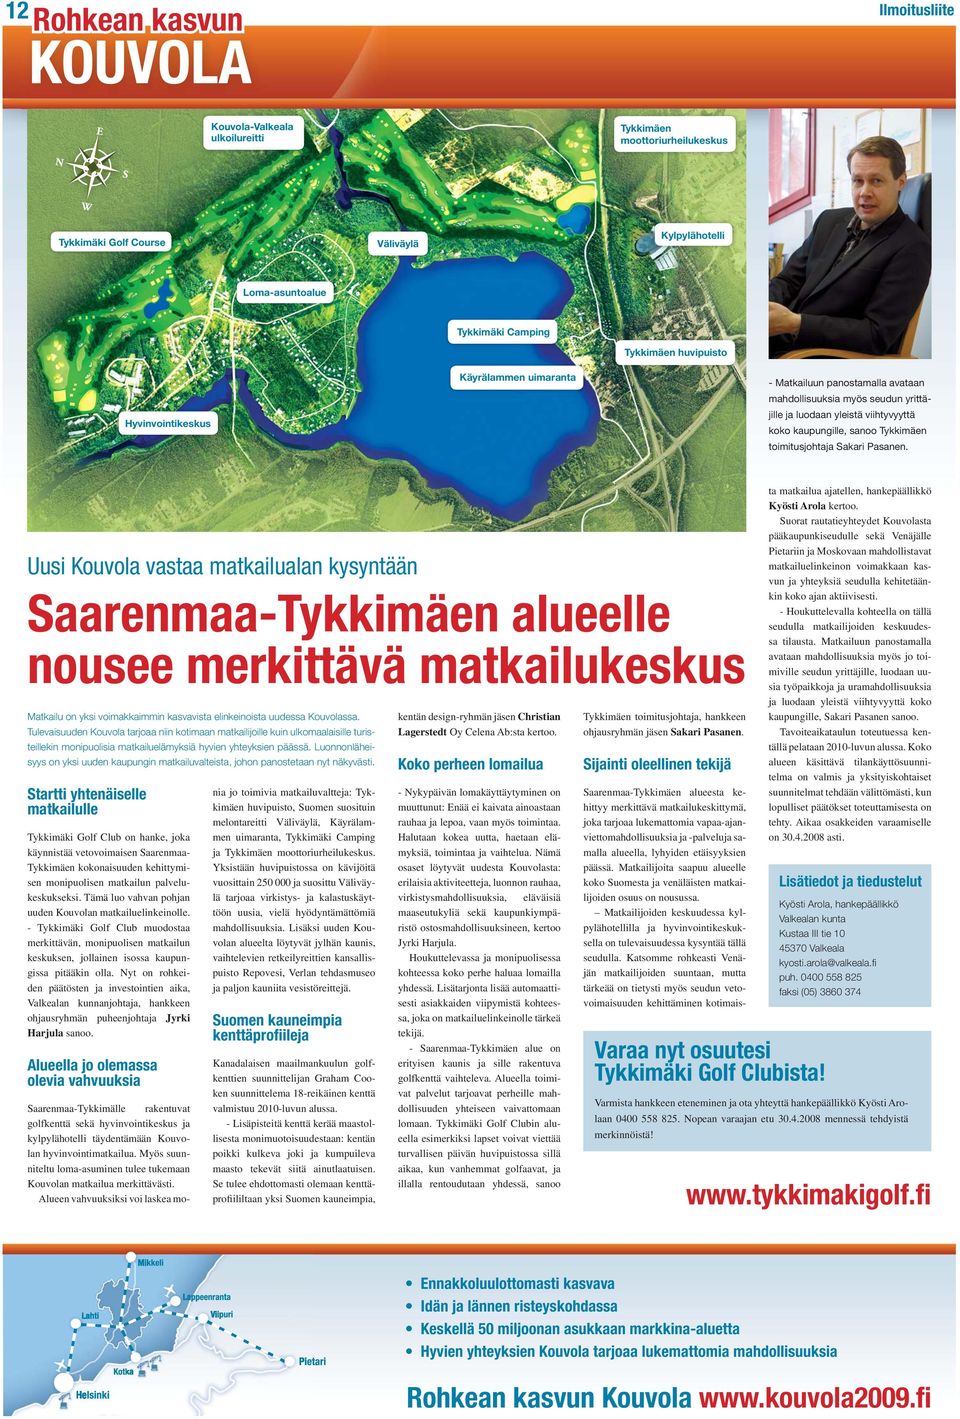 Uusi Kouvola vastaa matkailualan kysyntään Saarenmaa-Tykkimäen alueelle nousee merkittävä matkailukeskus Matkailu on yksi voimakkaimmin kasvavista elinkeinoista uudessa Kouvolassa.